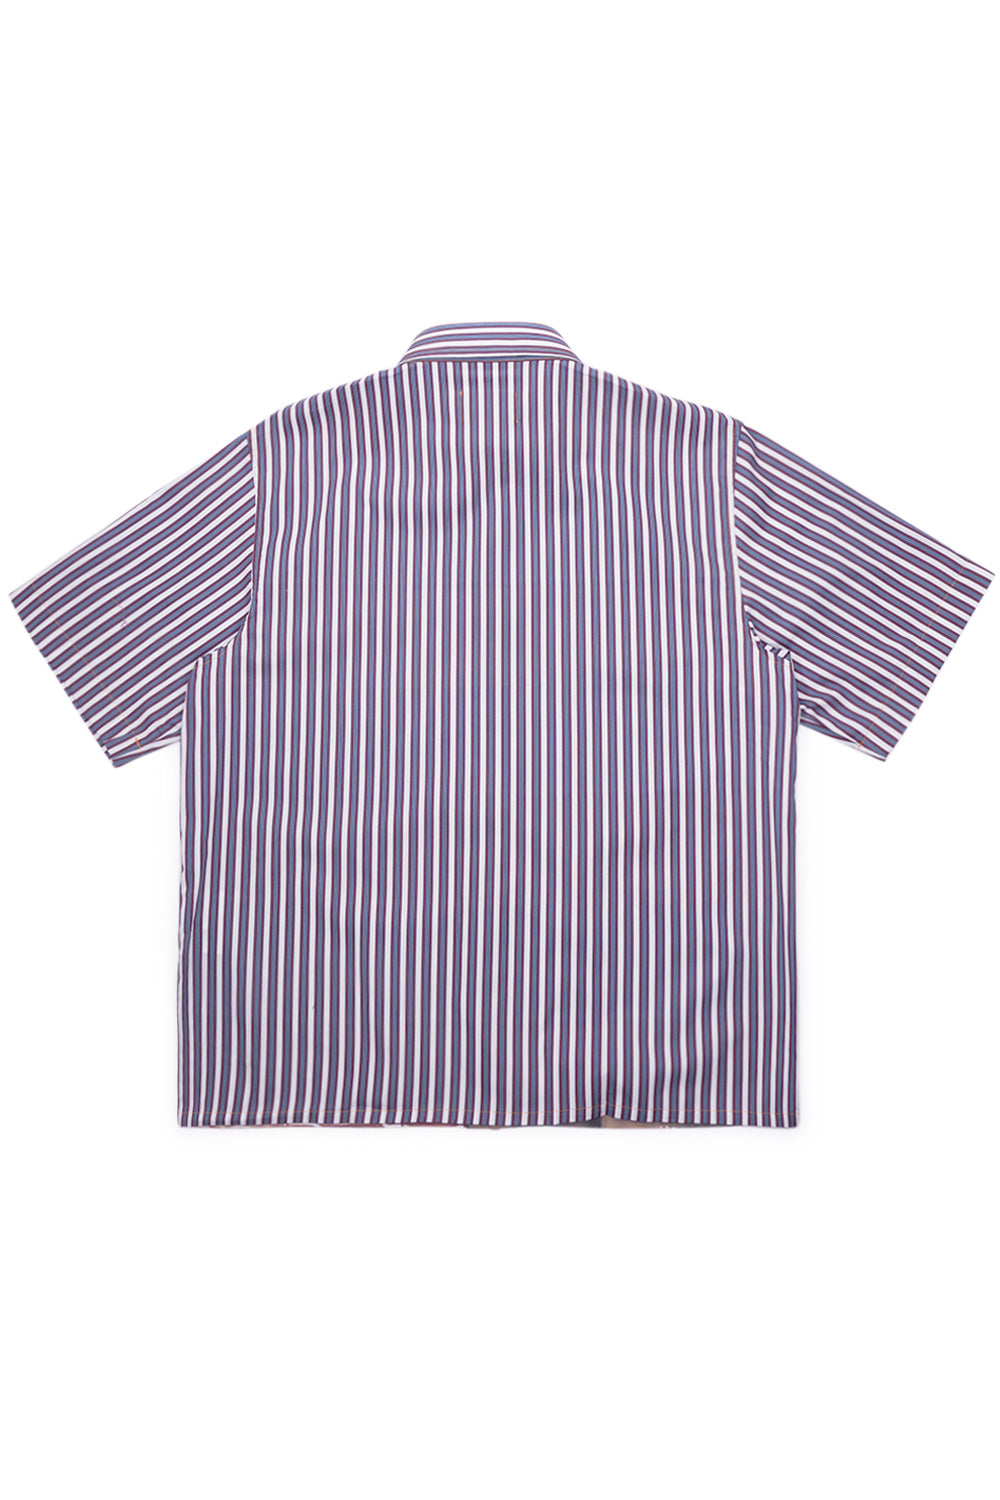 Rassvet (PACCBET) Kyle Striped Shirt - BONKERS